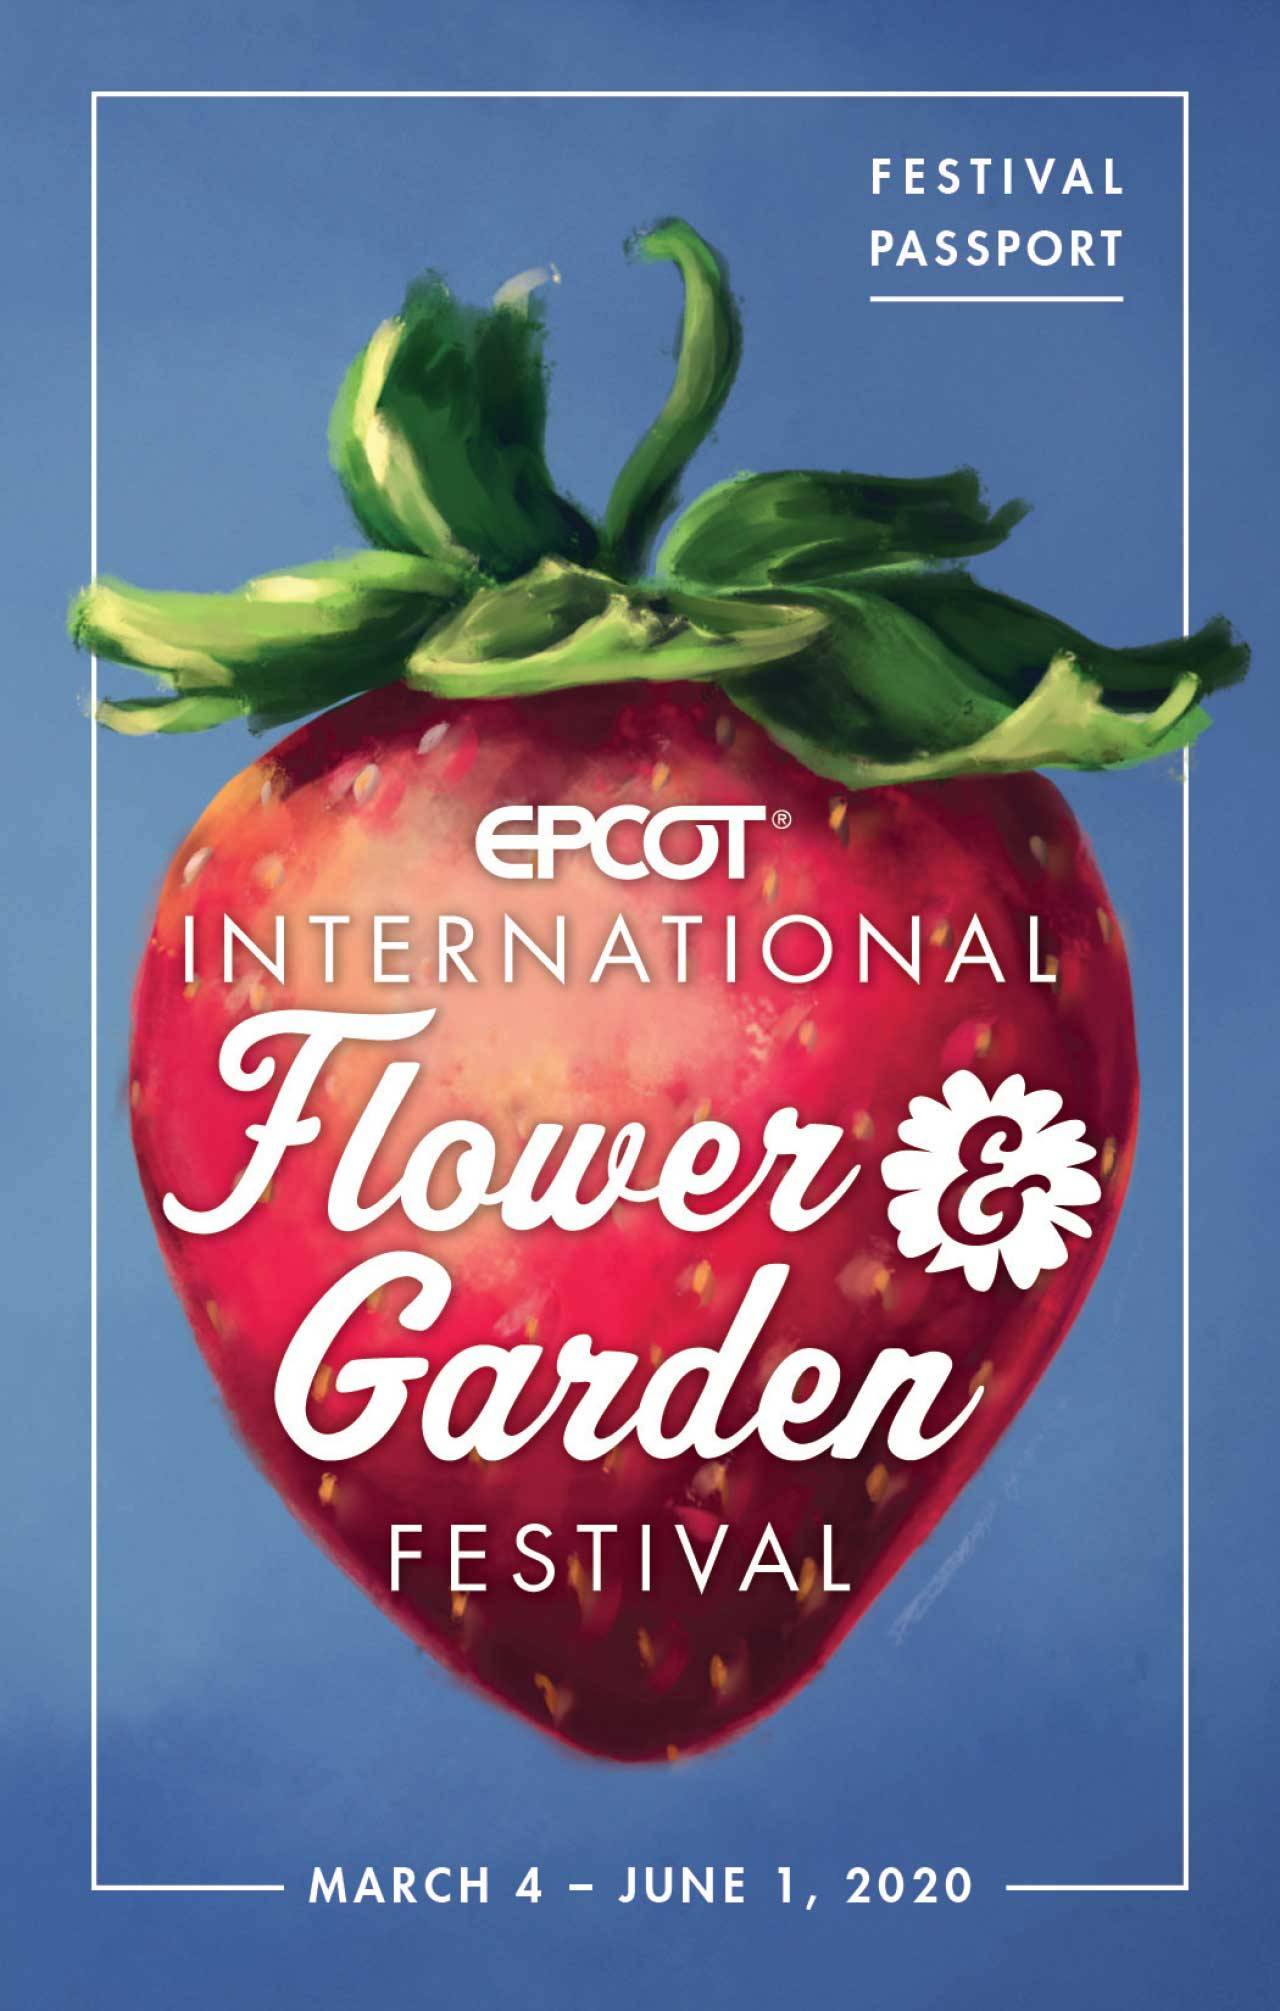 2020 Epcot International Flower and Garden Festival passport